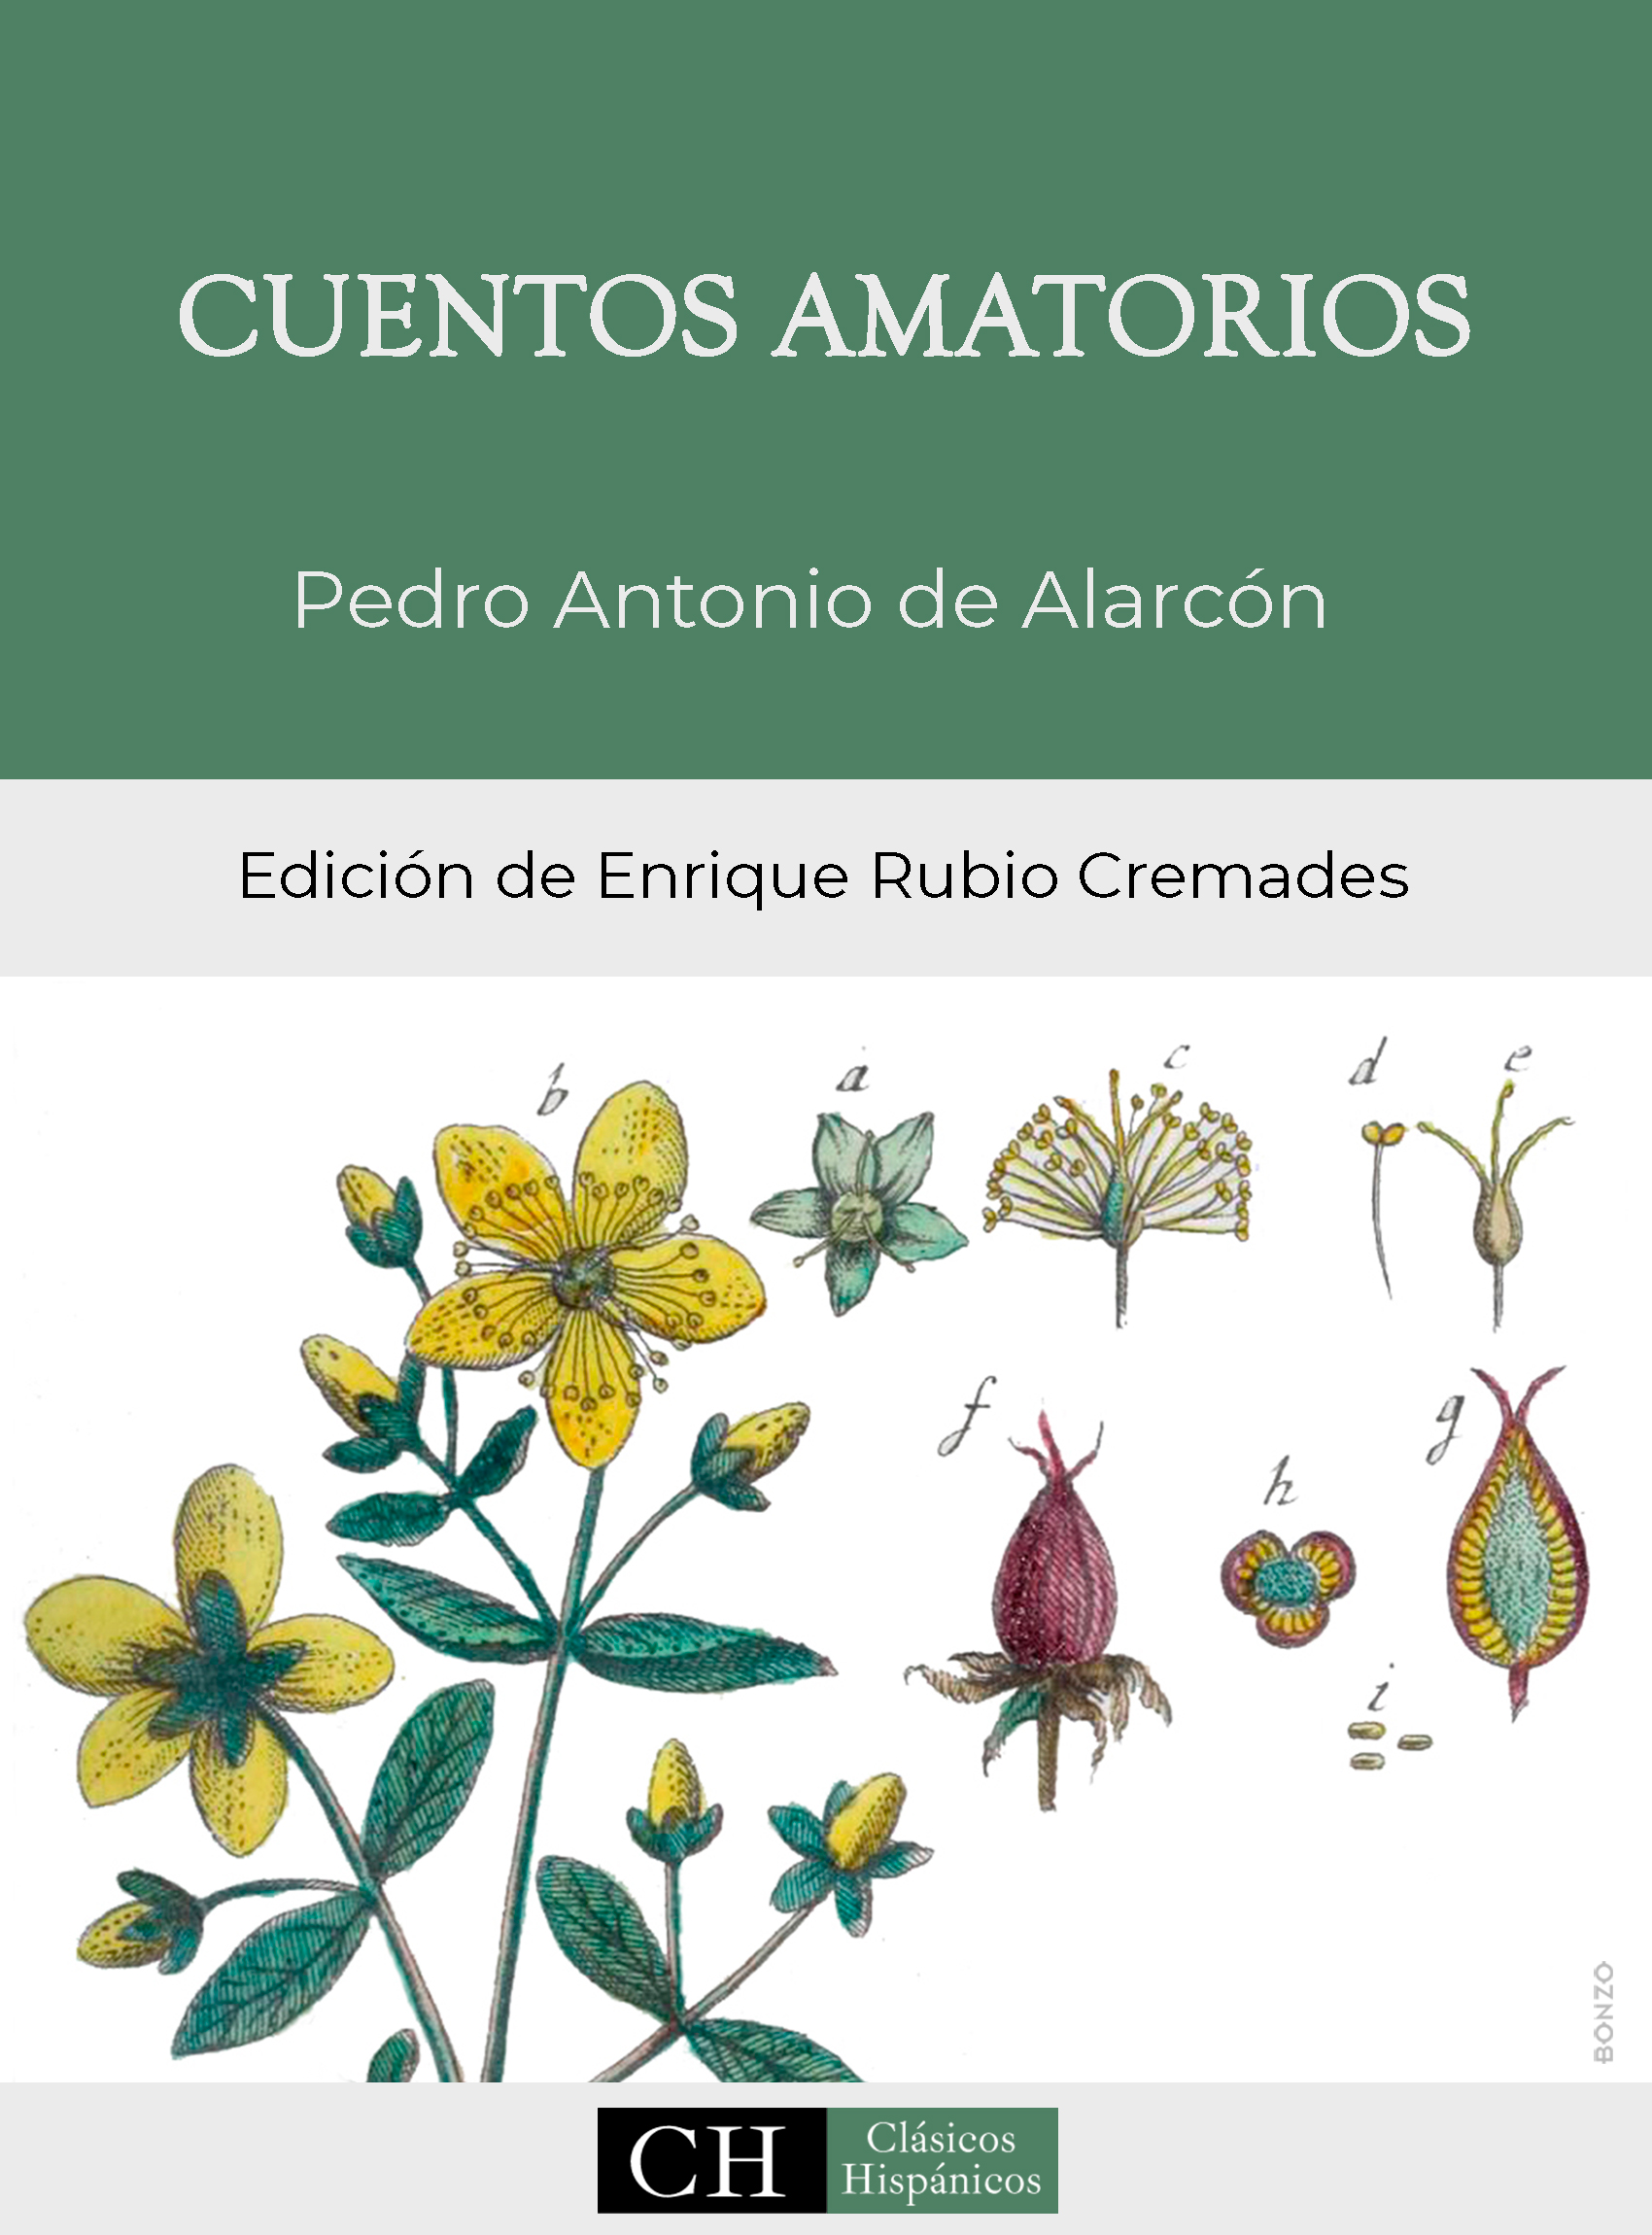 Imagen de portada del libro Cuentos amatorios